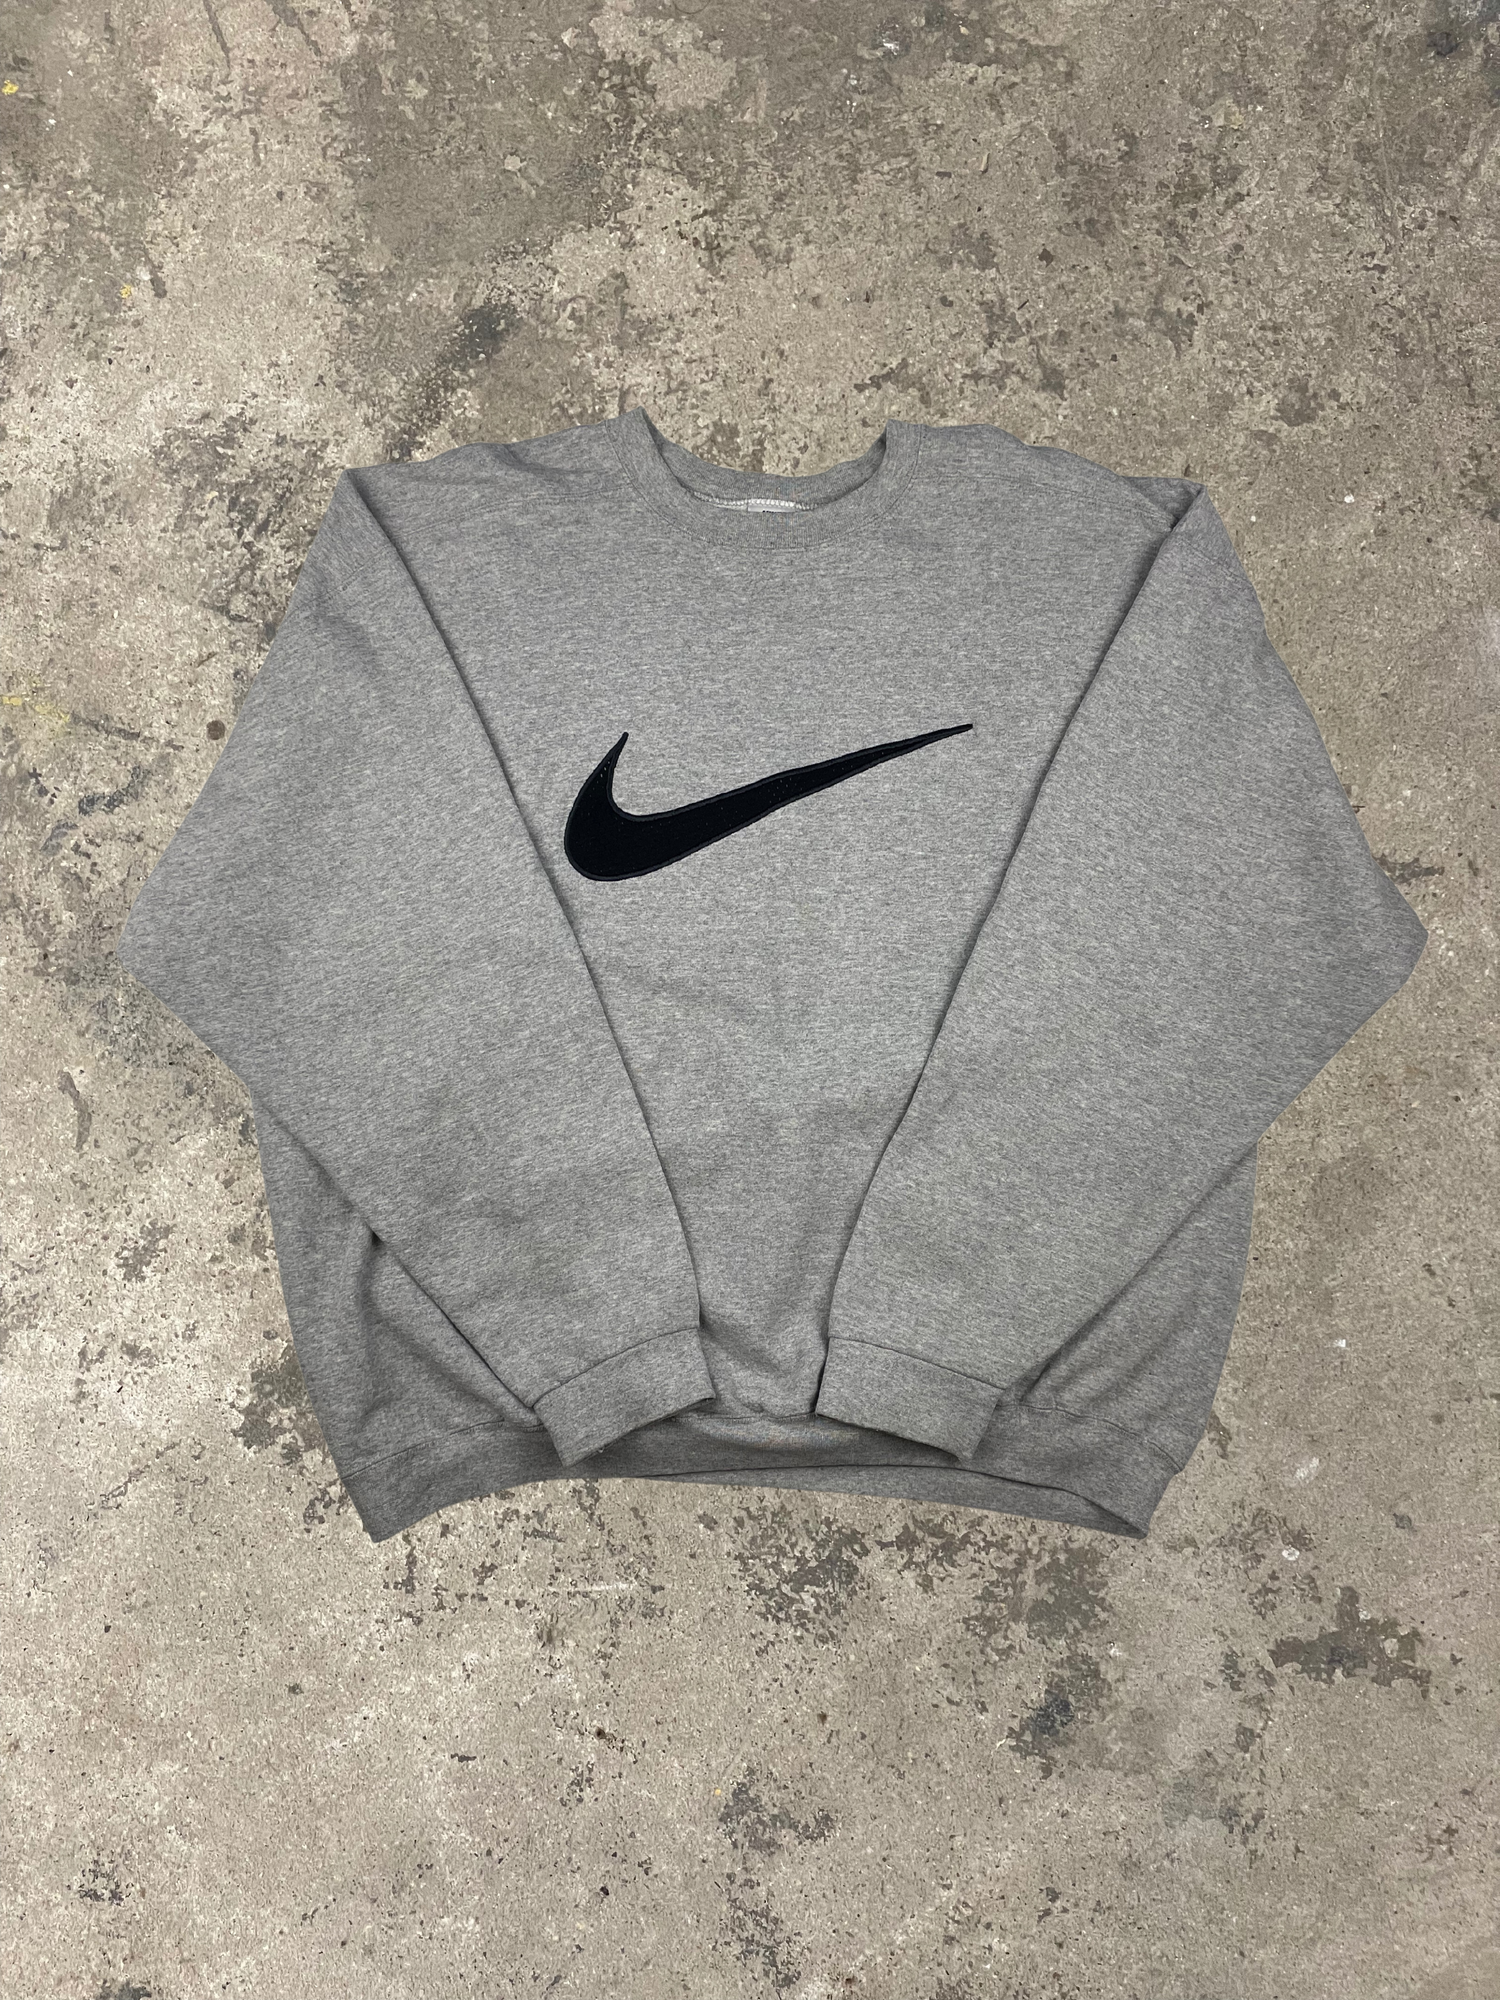 Vintage 90s rare Nike Sweatshirt